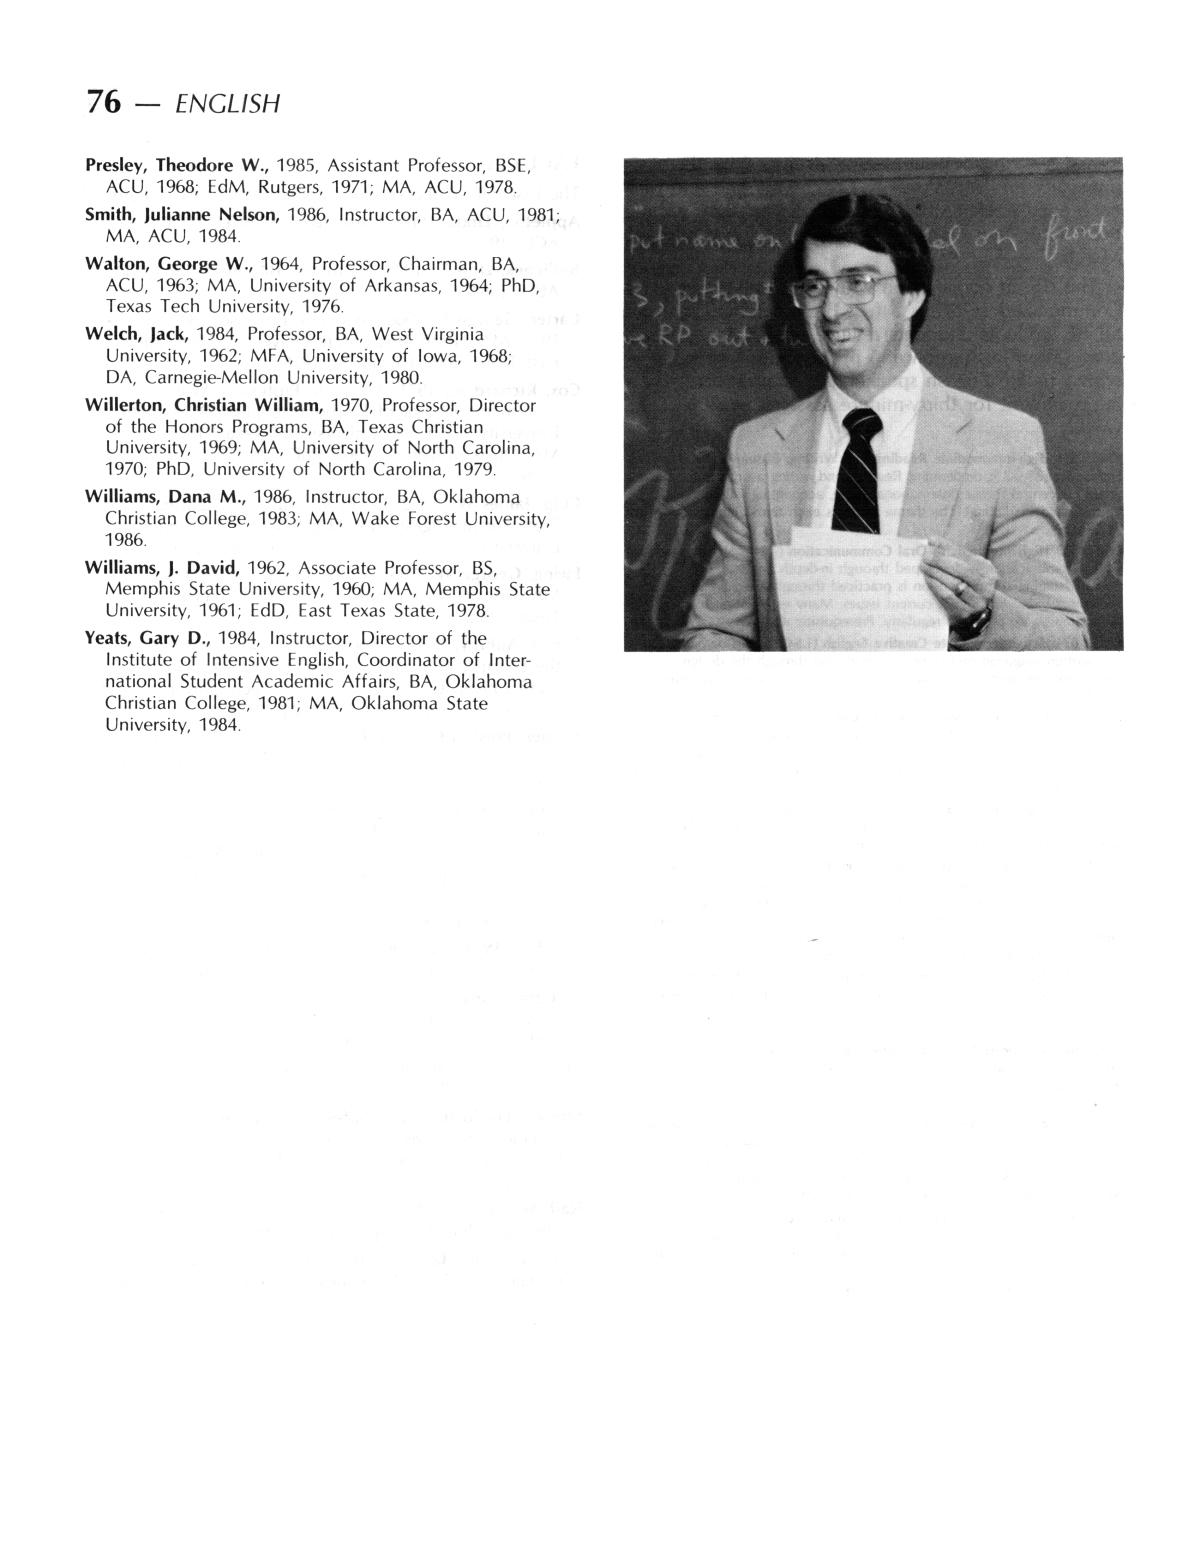 Catalog of Abilene Christian University, 1987-1988
                                                
                                                    76
                                                